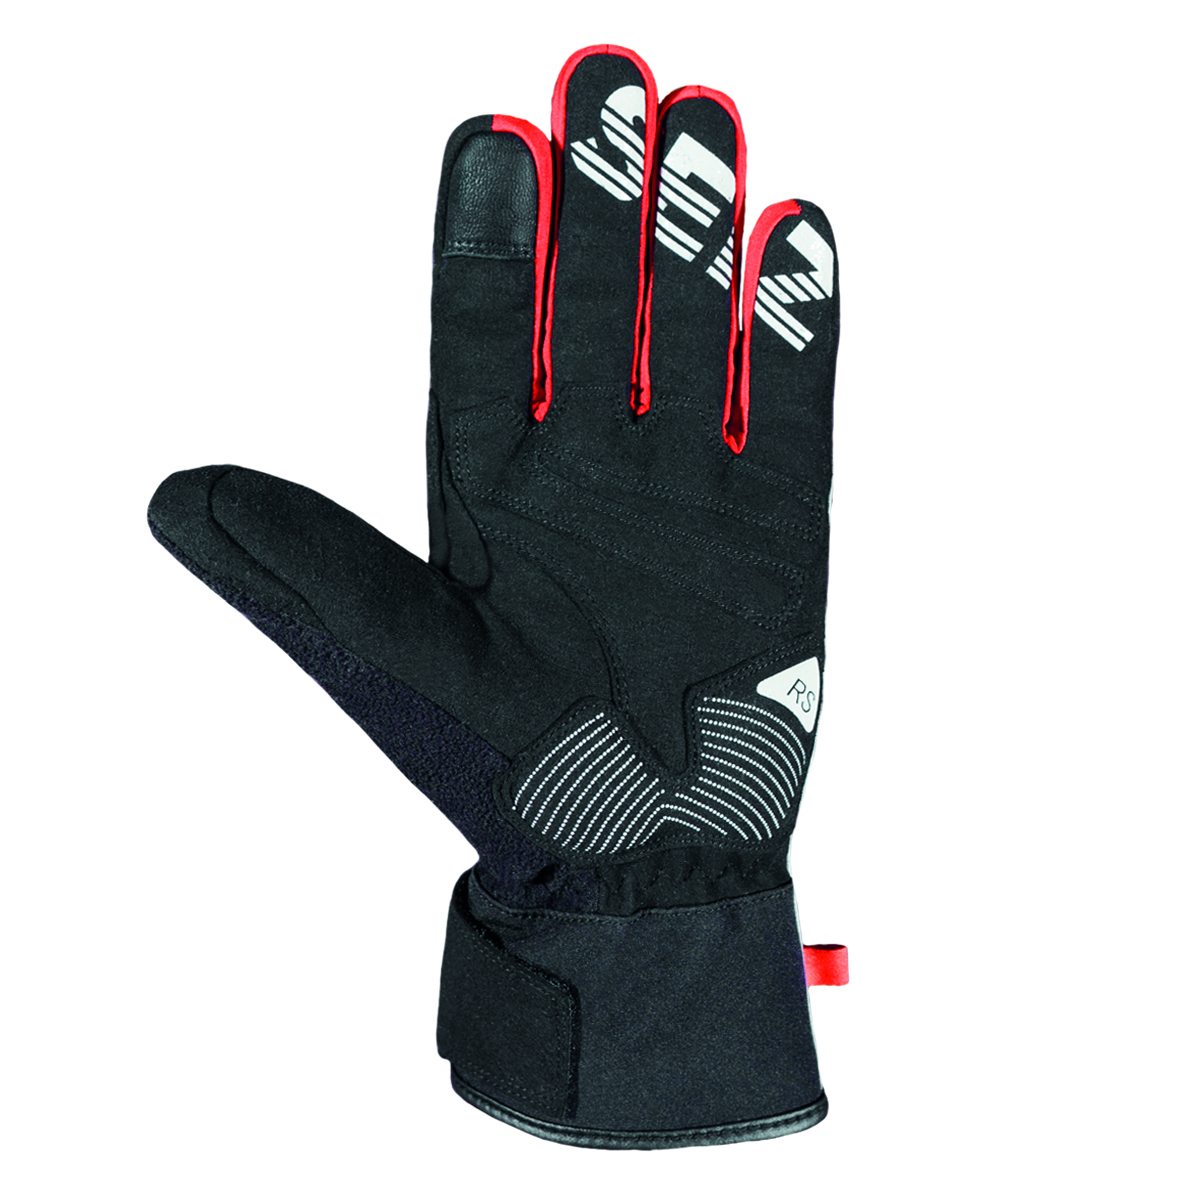 Seiz Winterhandschuhe RS Winter Handschuhe Schnee Unisex 800386 schwarz